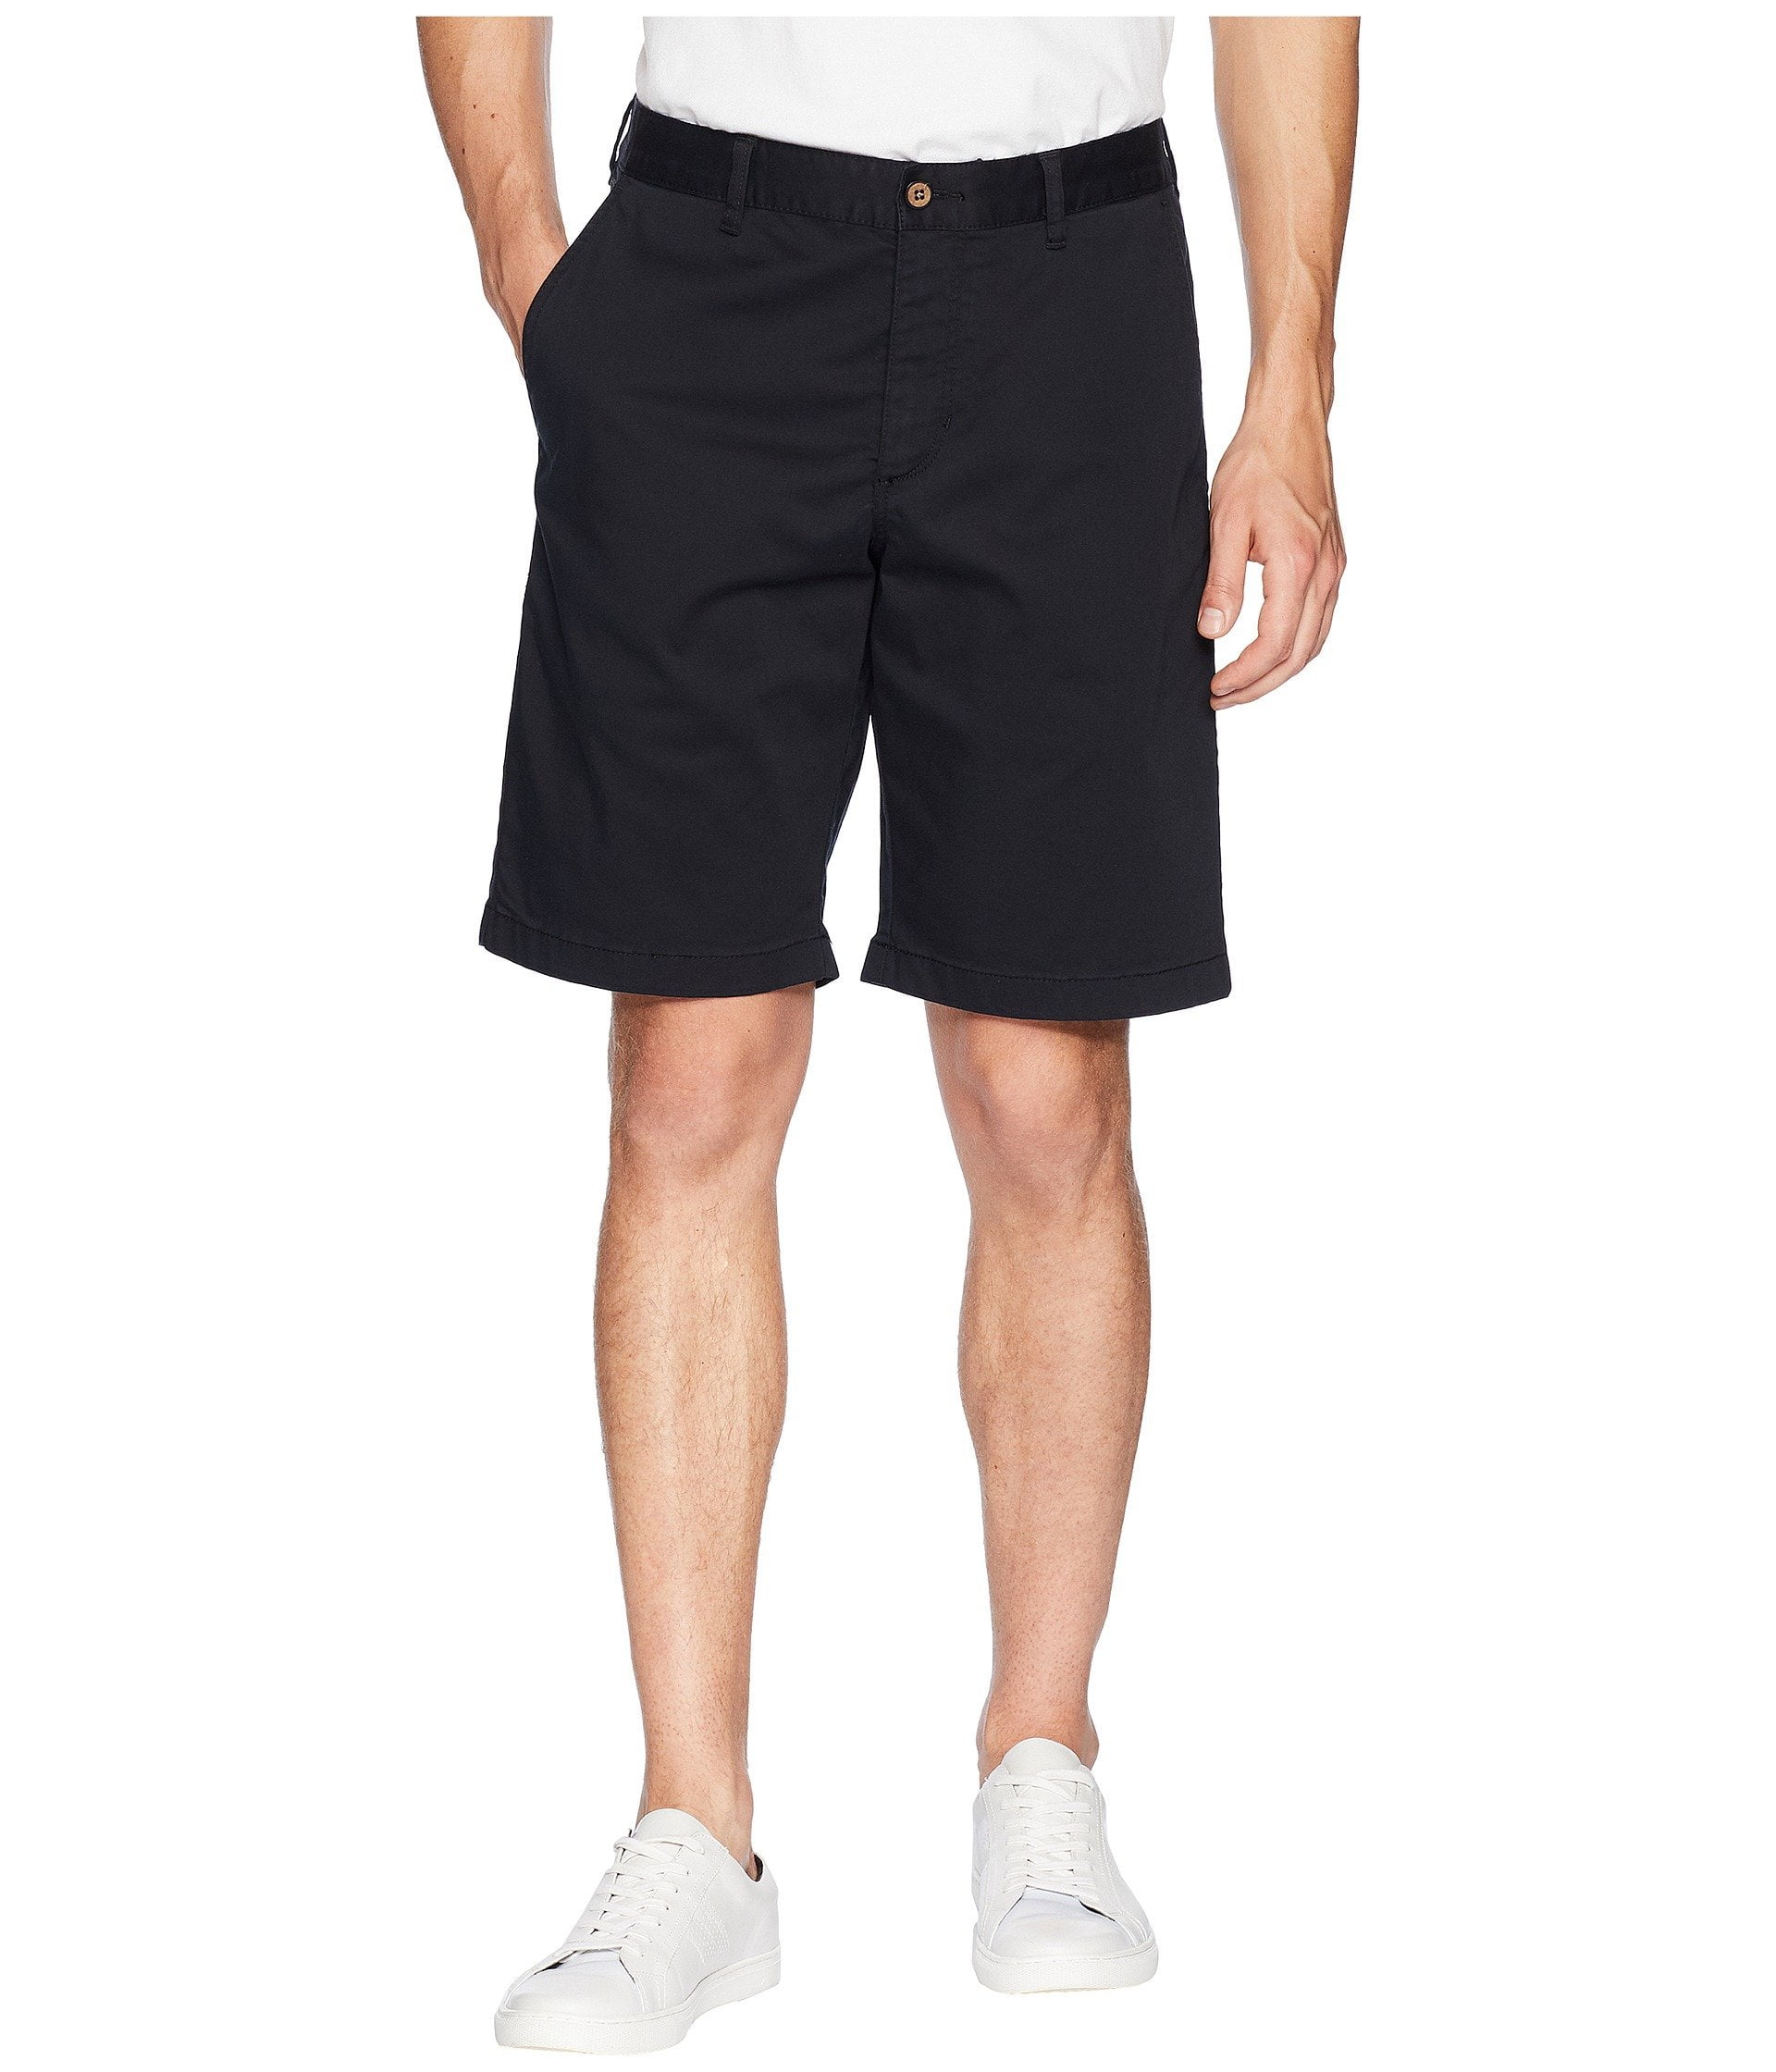 Tommy Bahama Boracay Shorts Black 30 10 - Walmart.com